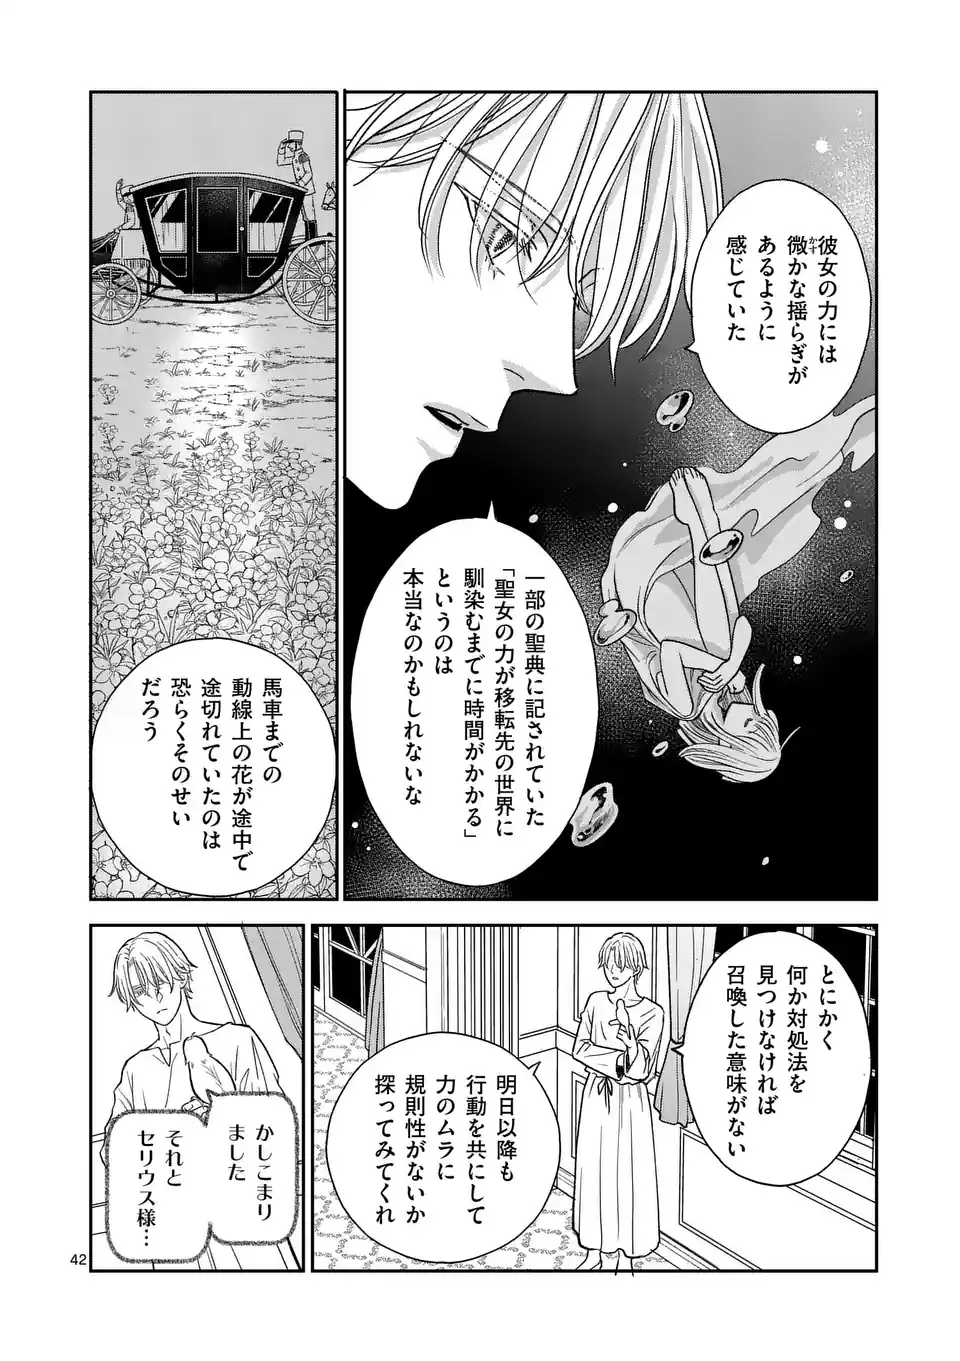 Makizoe de Isekai ni Yobidasareta no de, Sekai Kanmushi shite Wagashi Tsukurimasu - Chapter 1 - Page 42